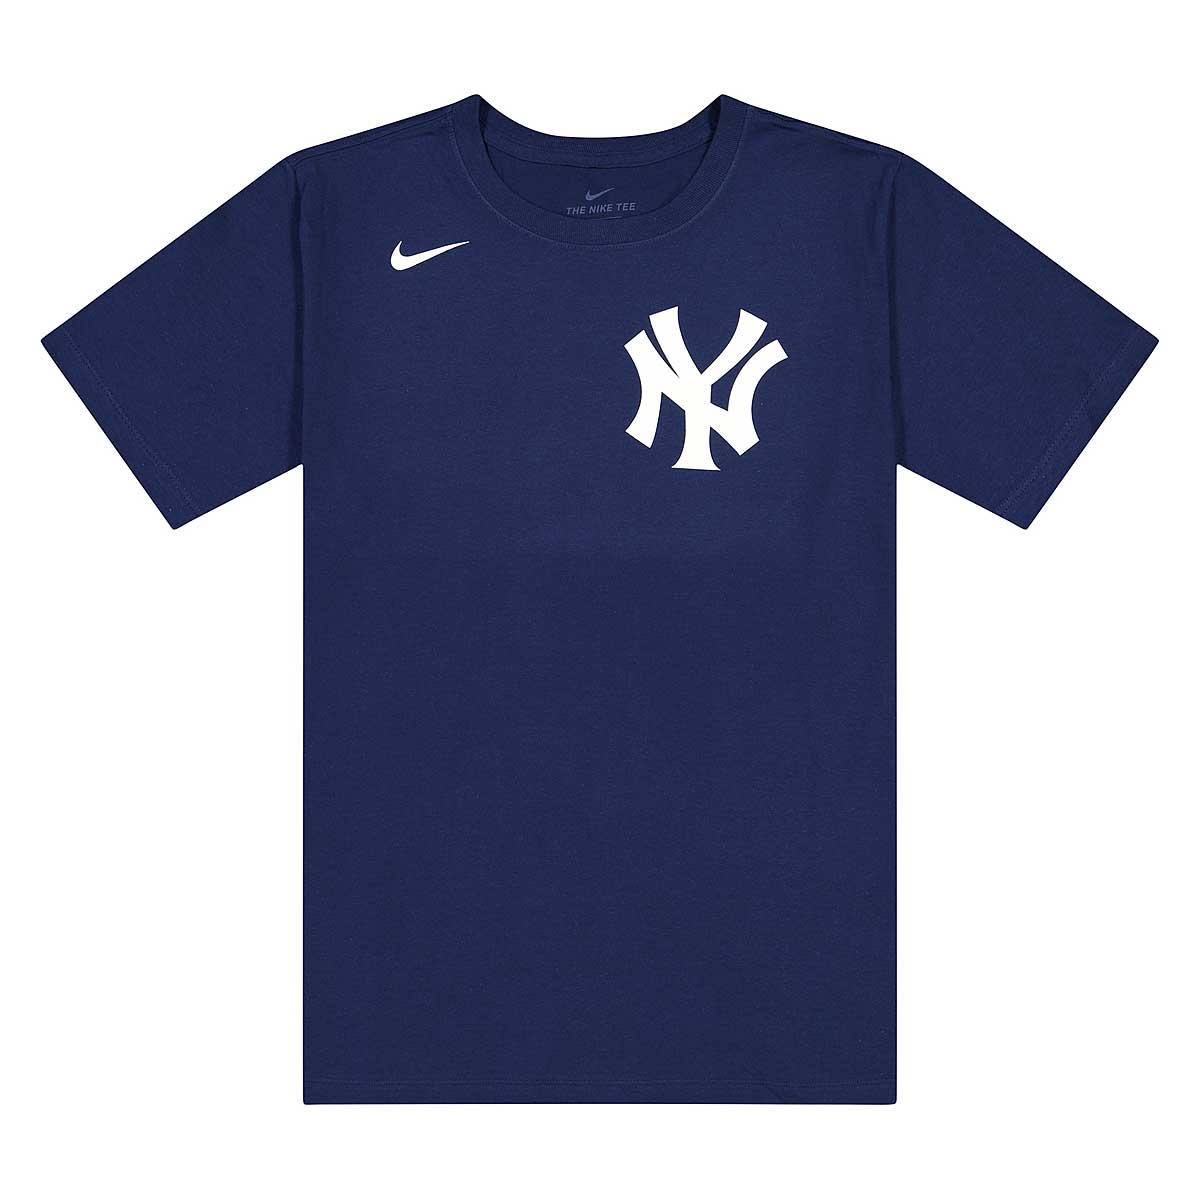 Fanatics Mlb New York Yankees Wordmark T-Shirt, Midnight Navy New York Yankees